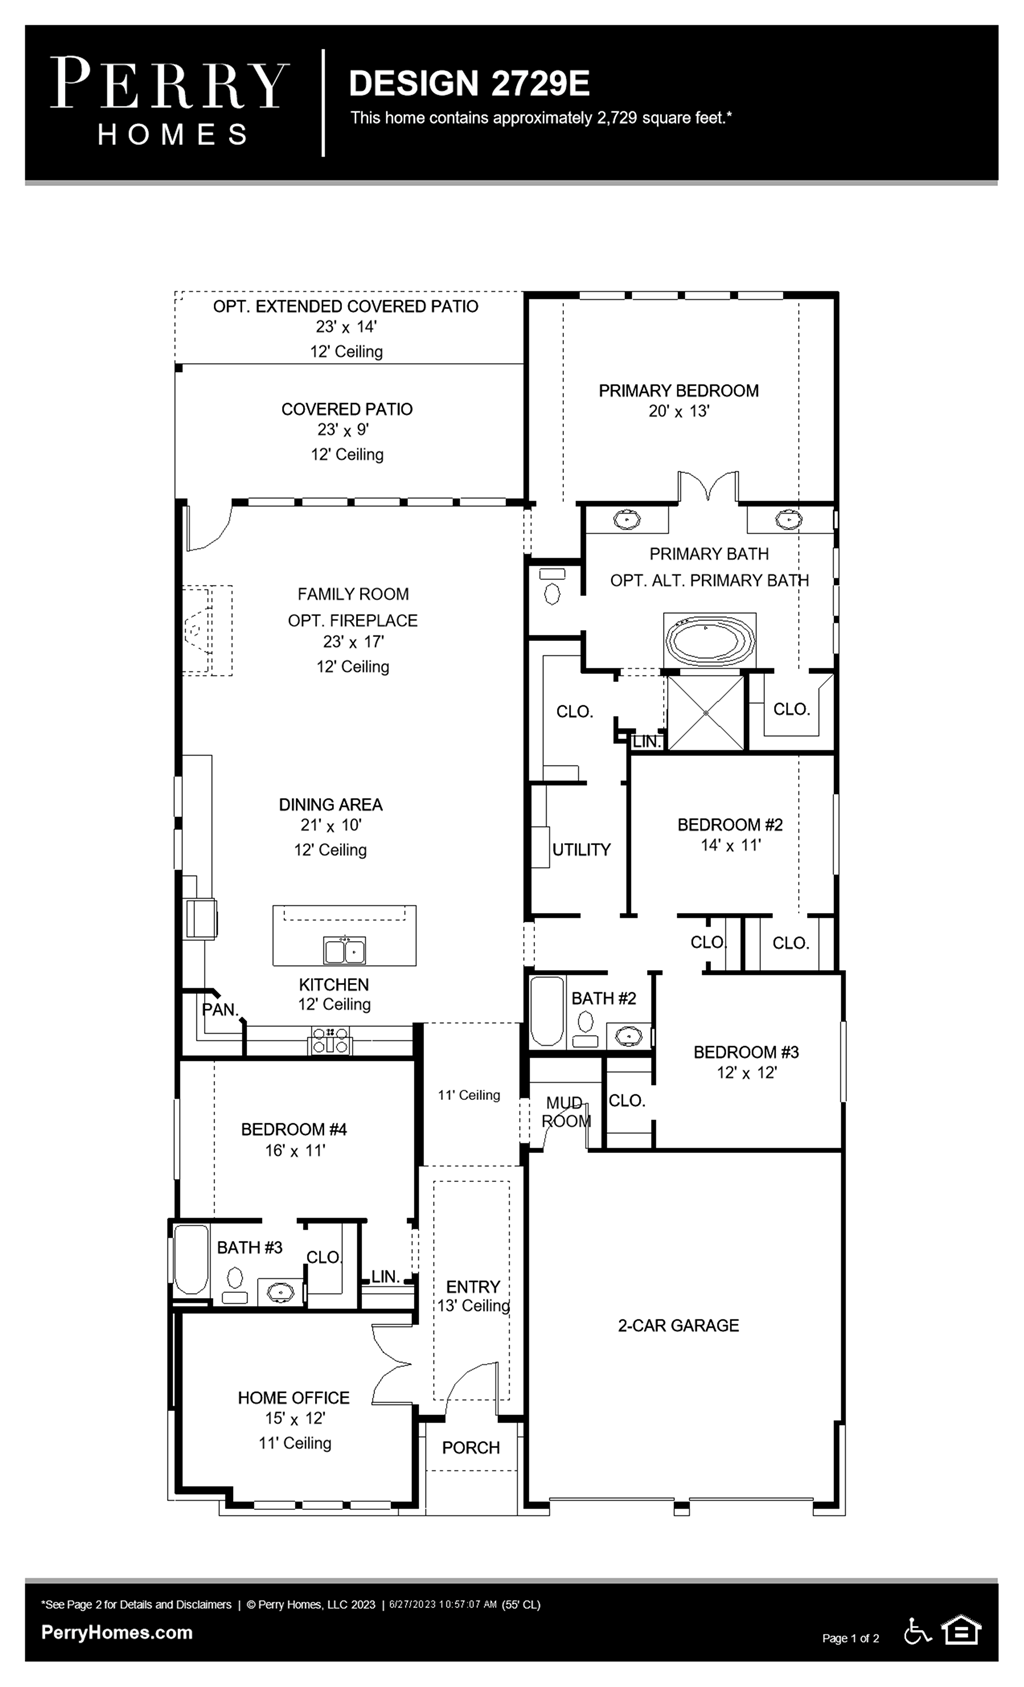 Floor Plan for 2729E